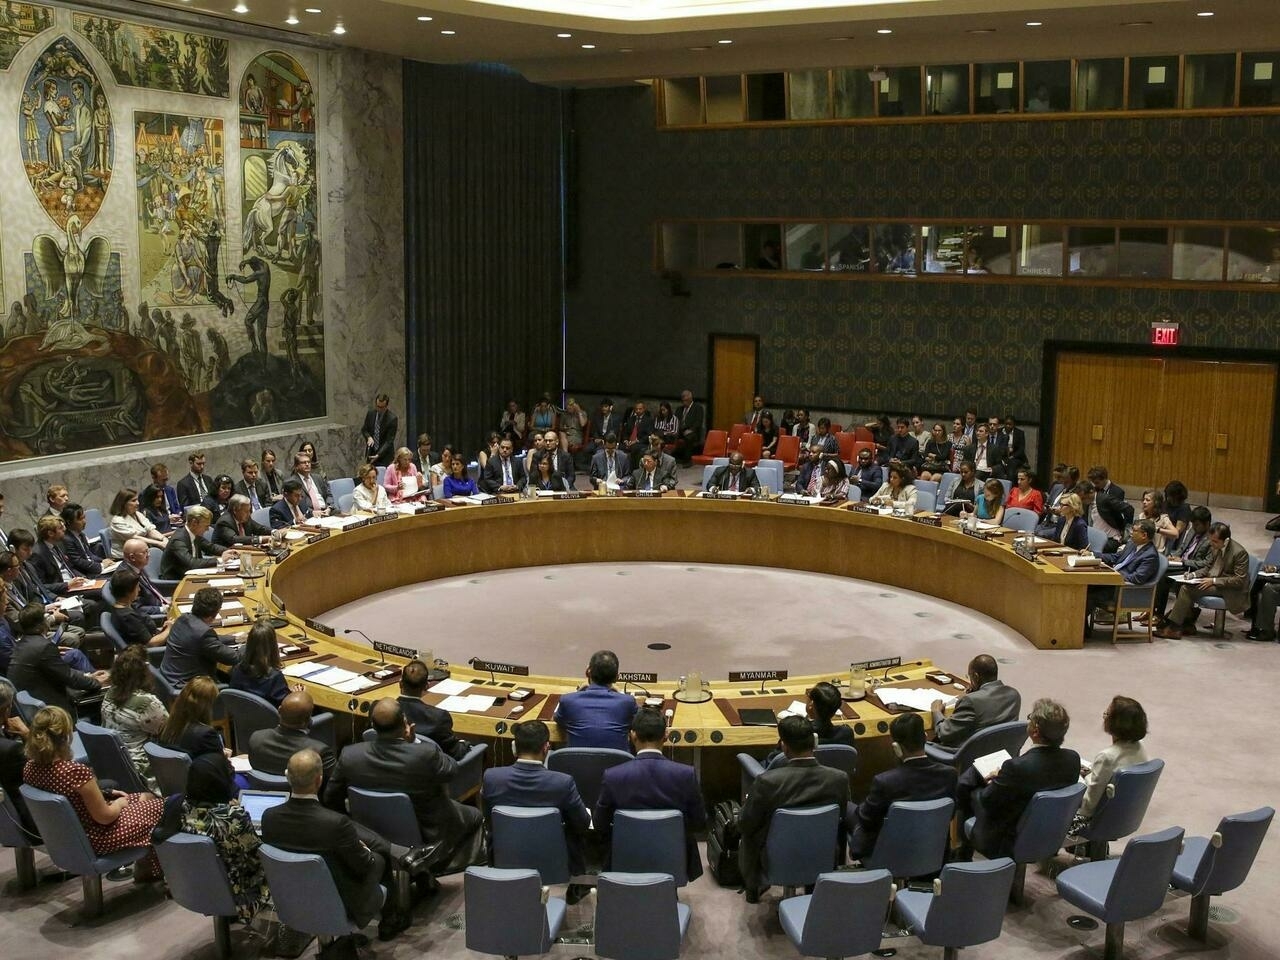 Захарова назвала «вбросом» сообщение, что Россия блокировала резолюцию СБ ООН по Ливии. Но это подтверждает информационный источник СБ